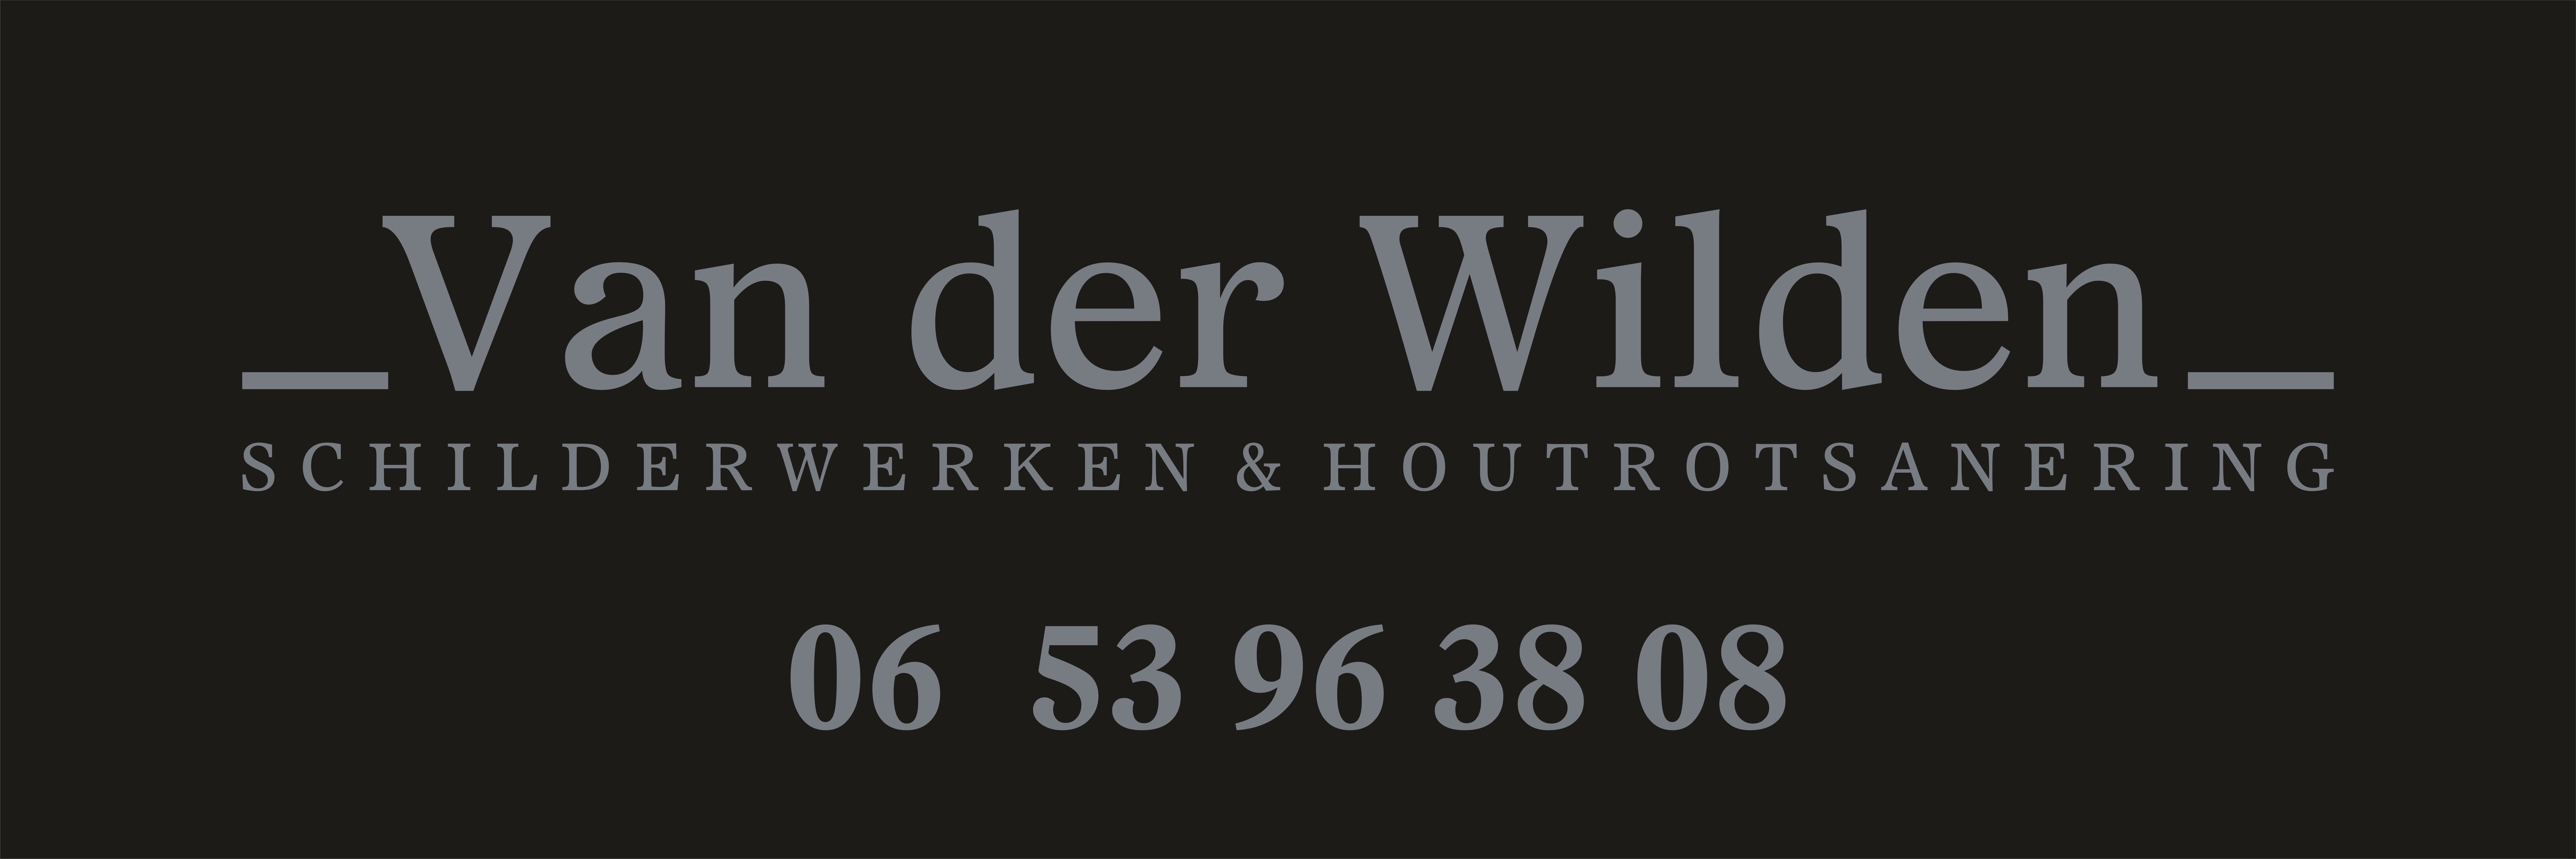 Onderhoudsbedrijf Van der Wilden logo